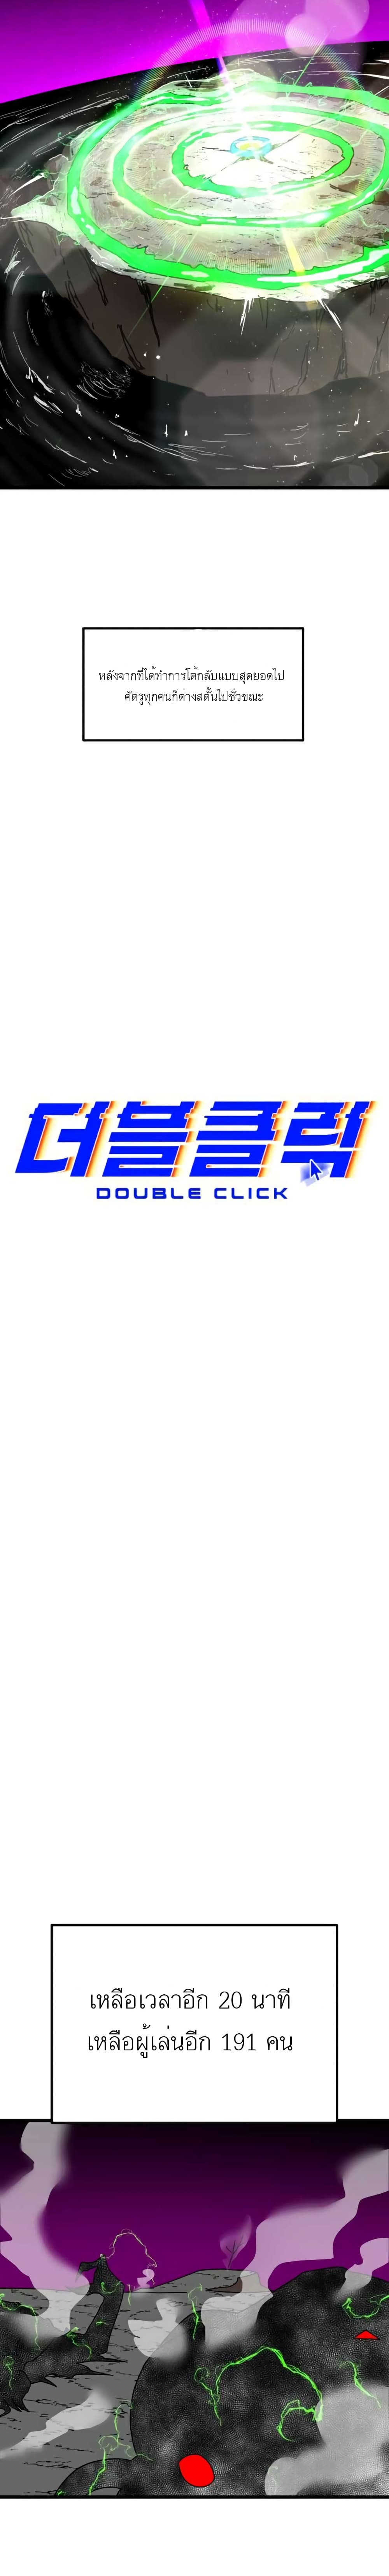 Double Click เธ•เธญเธเธ—เธตเน 36 (19)